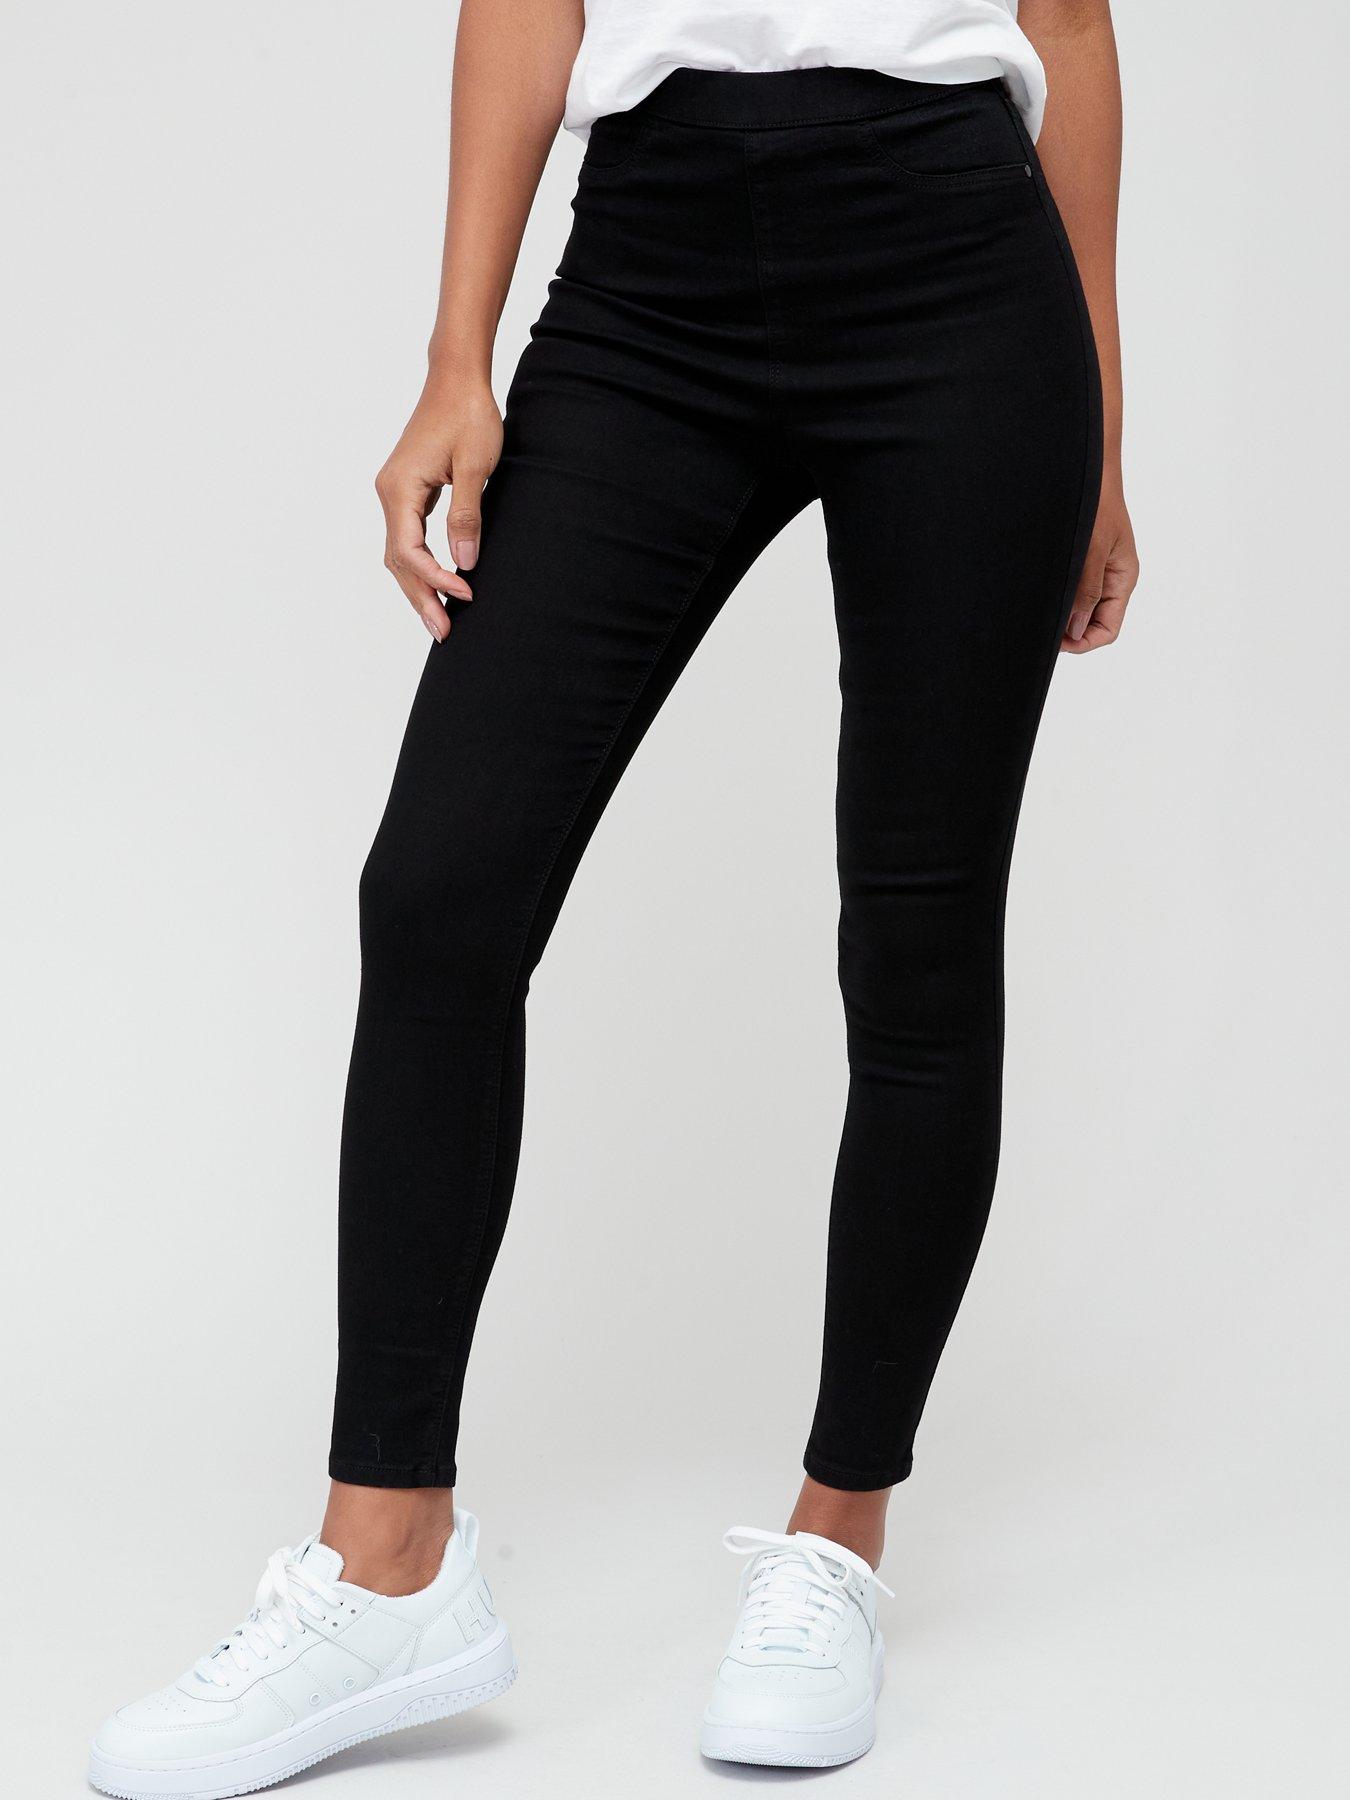 Leggings Jeans for Women Denim Pants with Pocket Slim Jeggings Fitness Plus  Size Leggings S-XXL Black/Gray/Blue, Wish